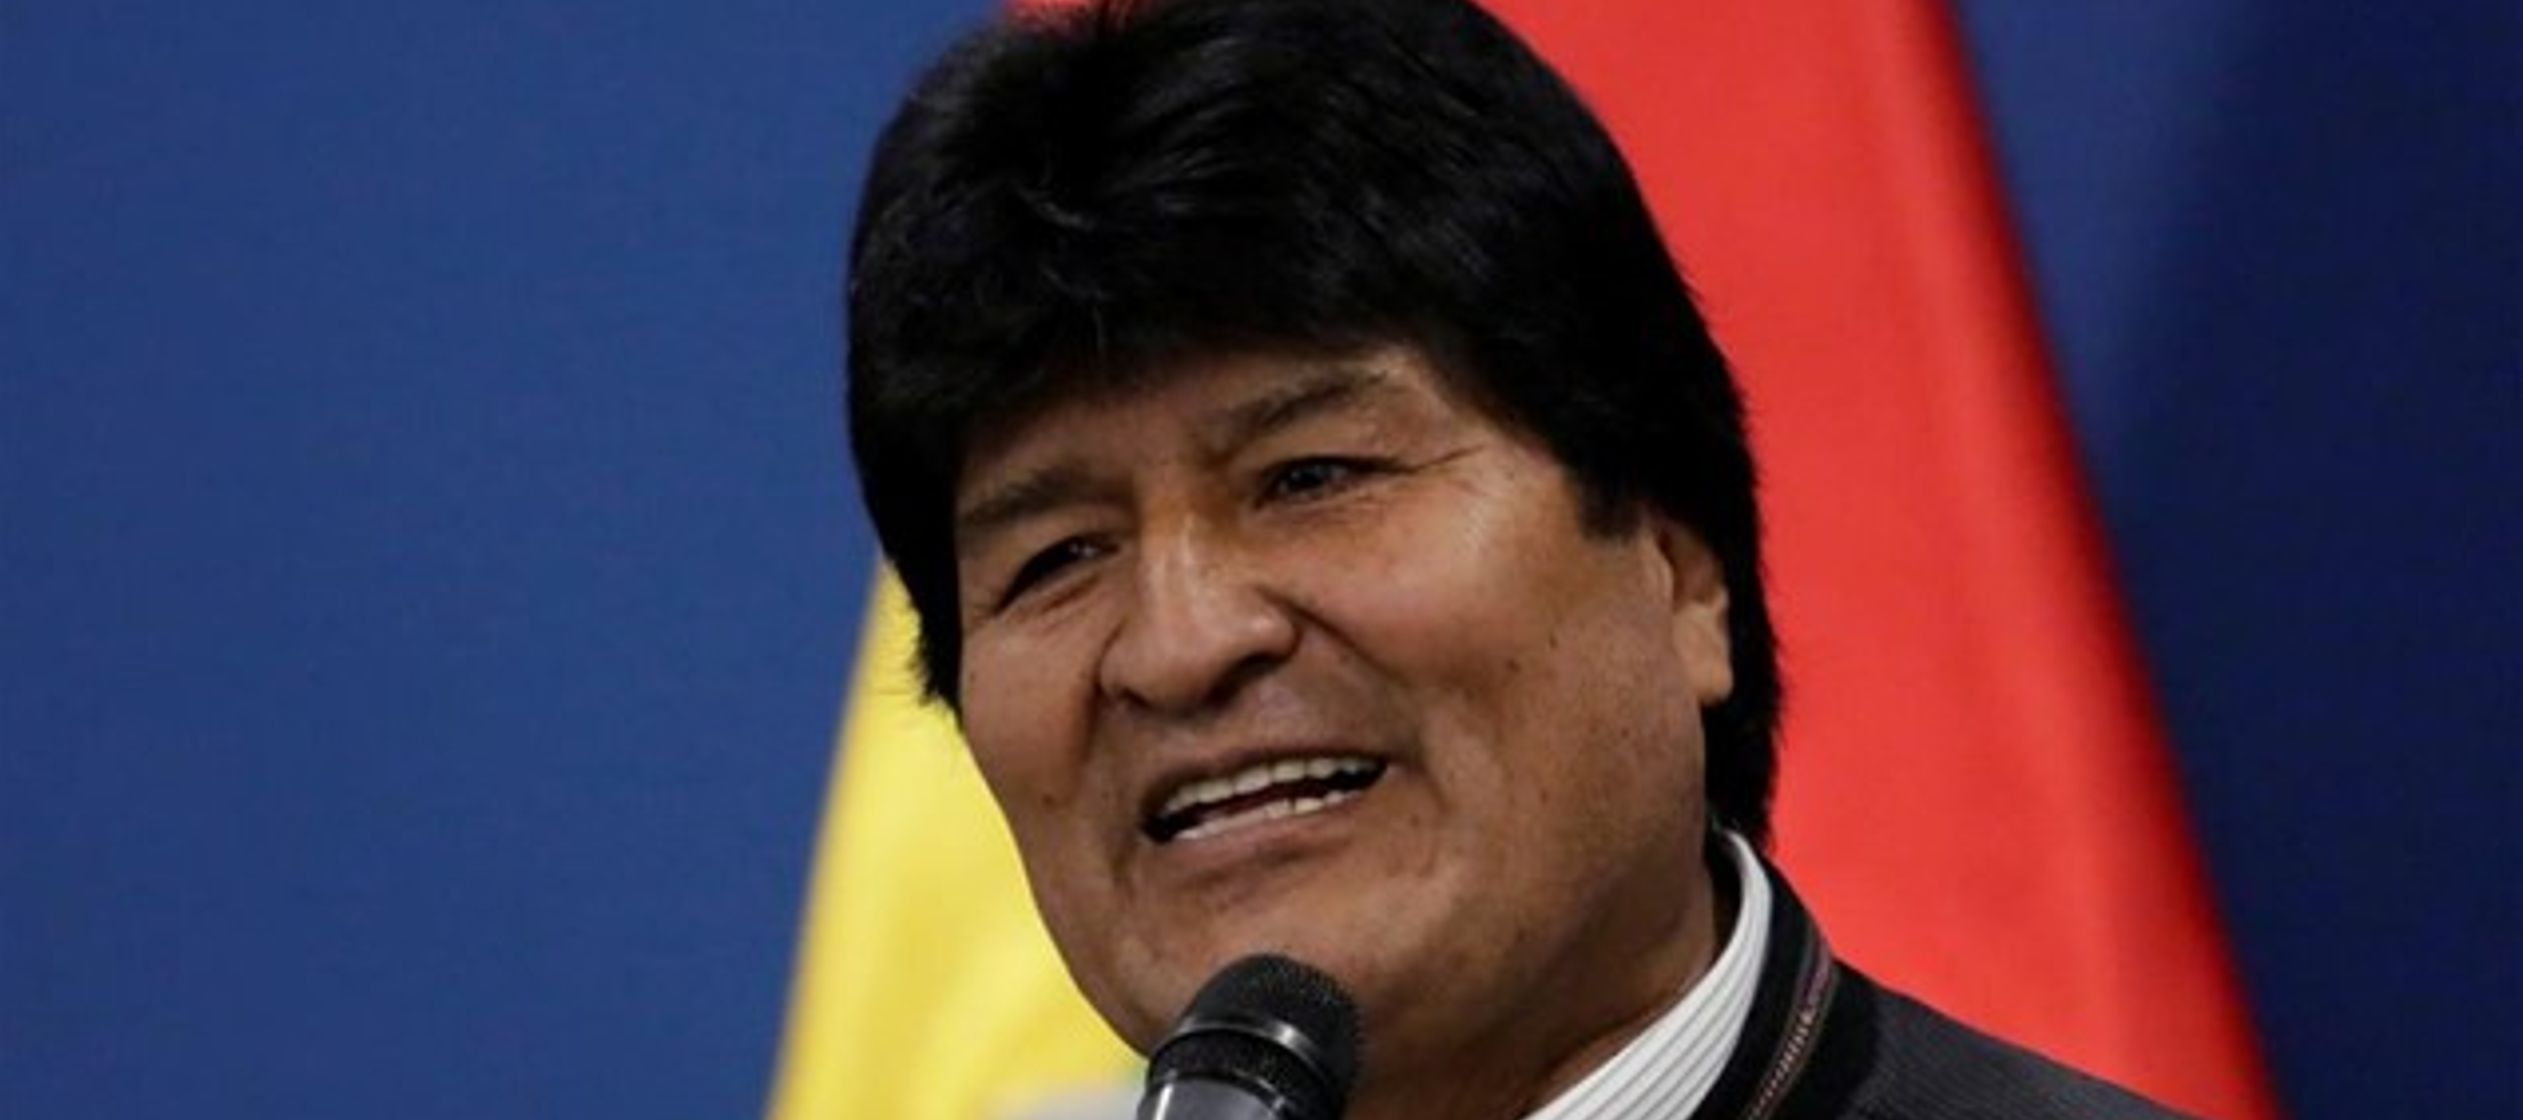 Morales ha argumentado más tarde en un discurso que Estados Unidos está interesado en...